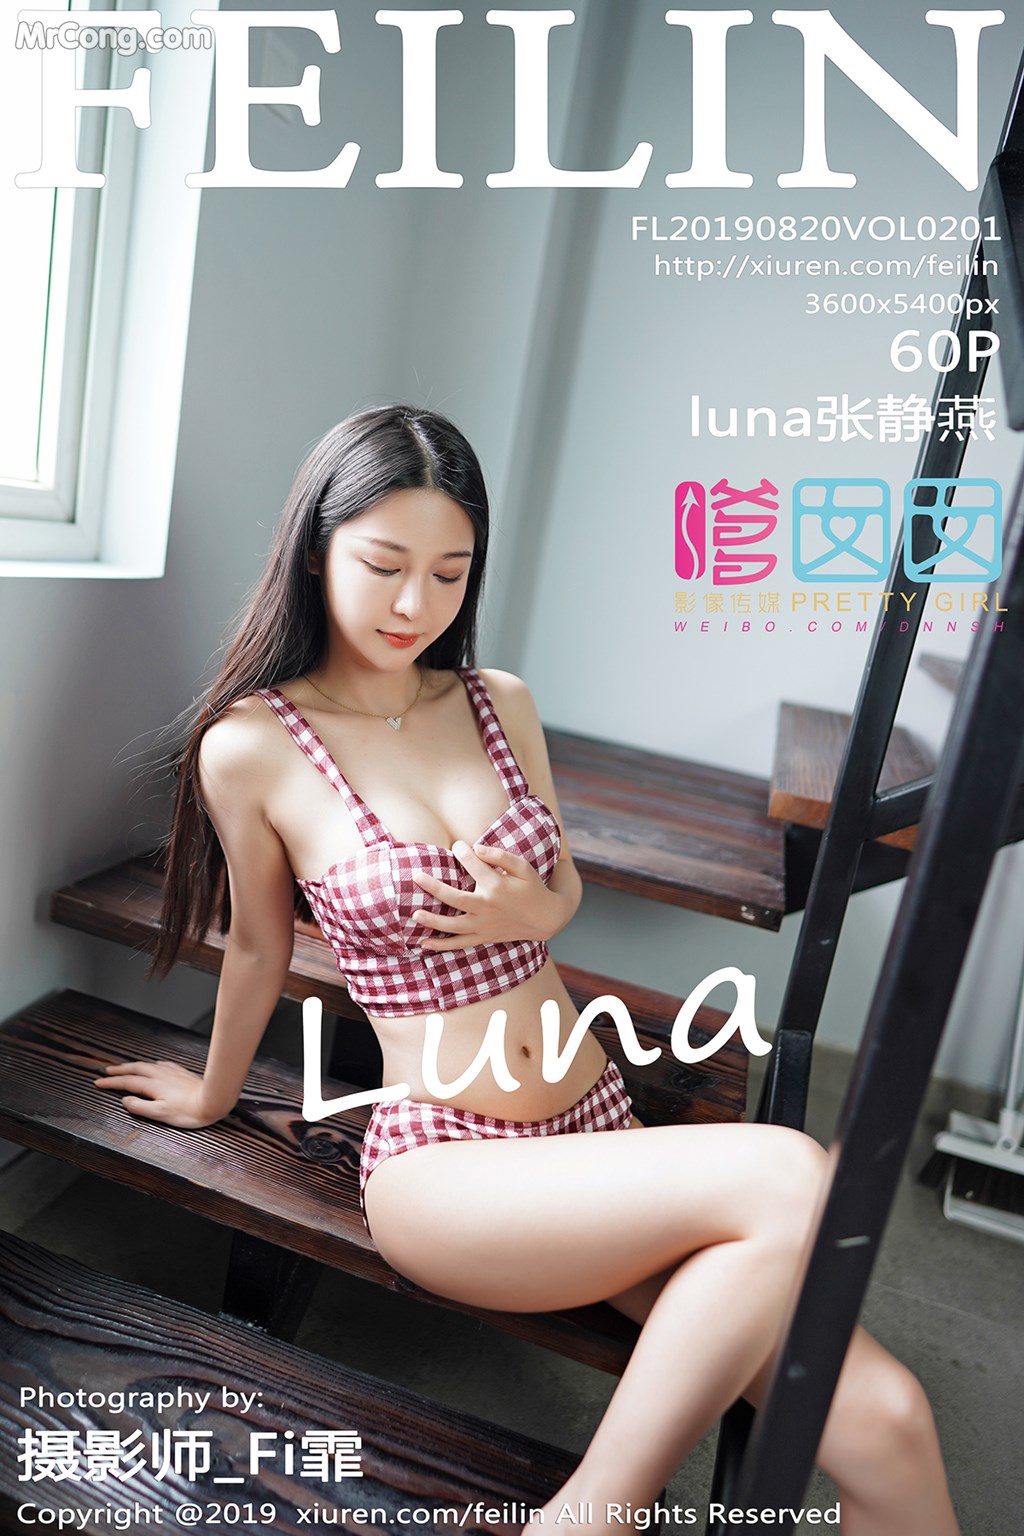 FEILIN Vol. 2001: Zhang Jing Yan (luna 张静燕) (61 pictures) photo 1-0